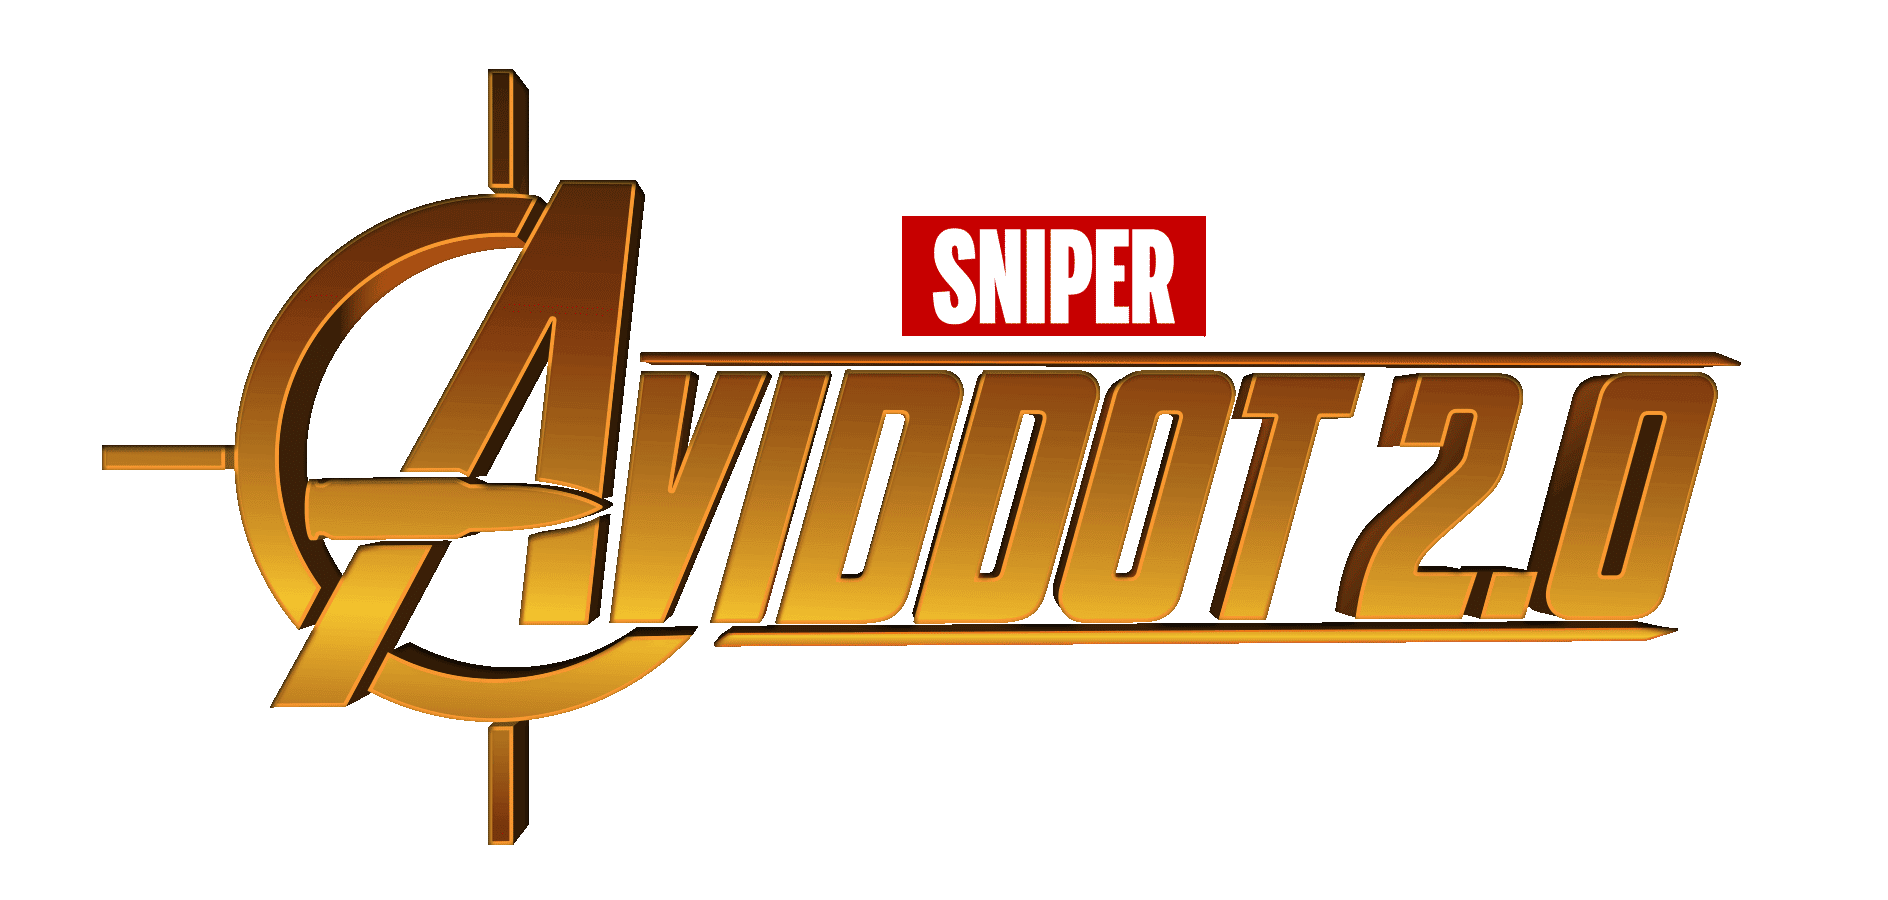 Aviddot Sniper bot